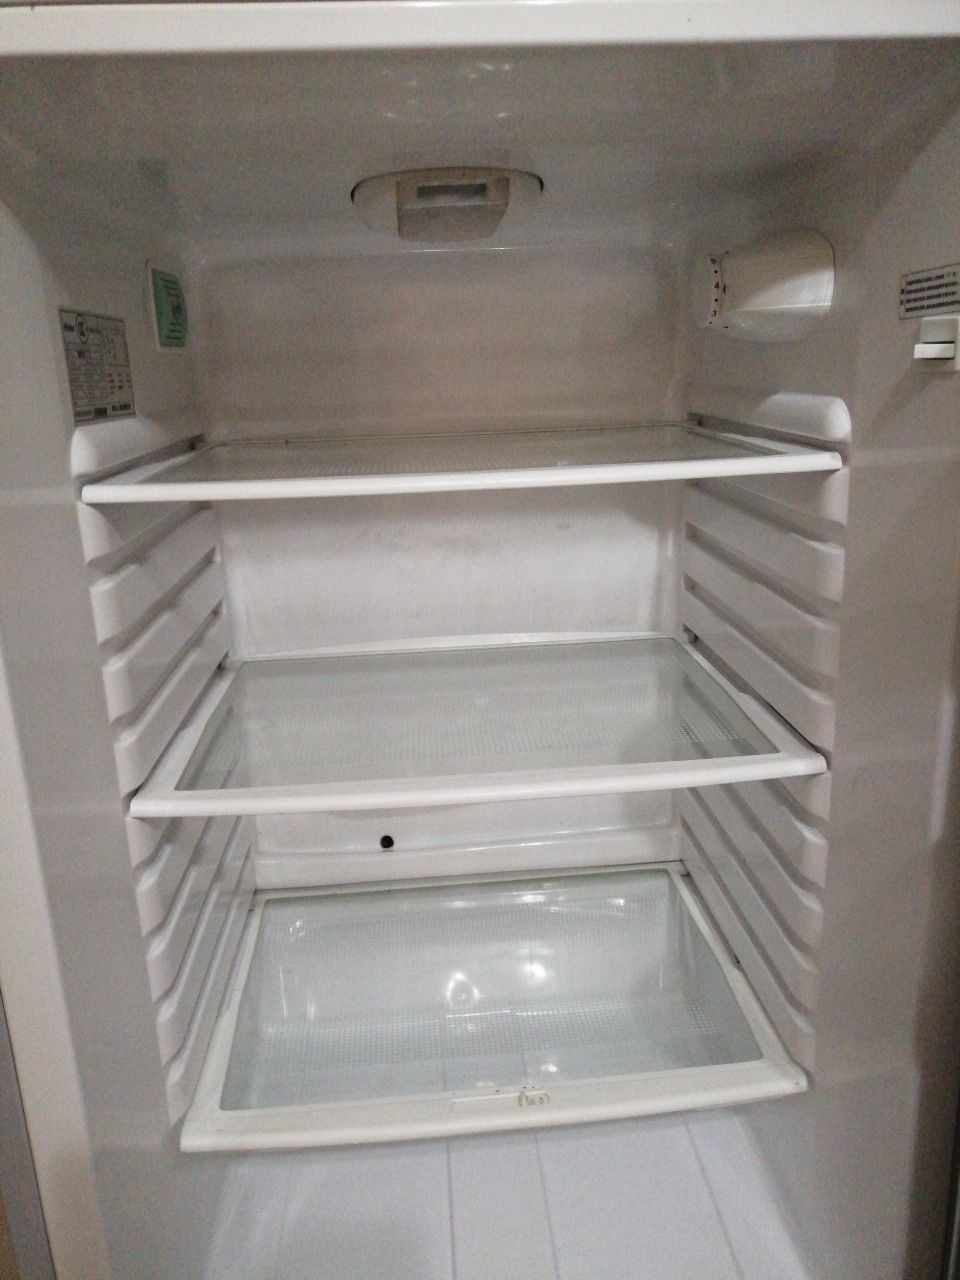 Холодильник Haier